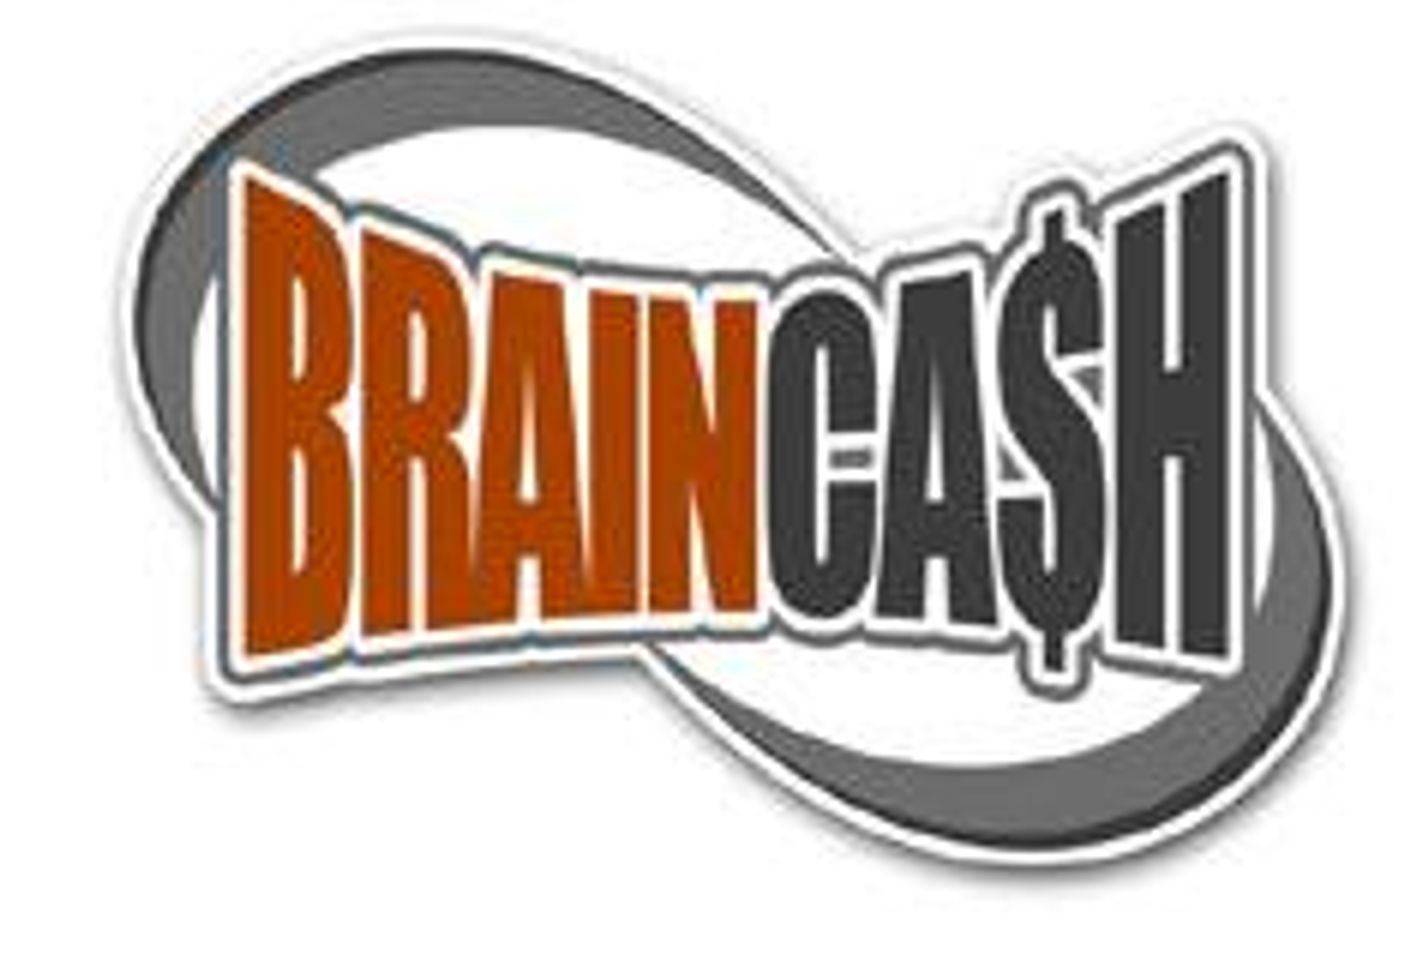 BrainCash Announces Release of LexSteele.com